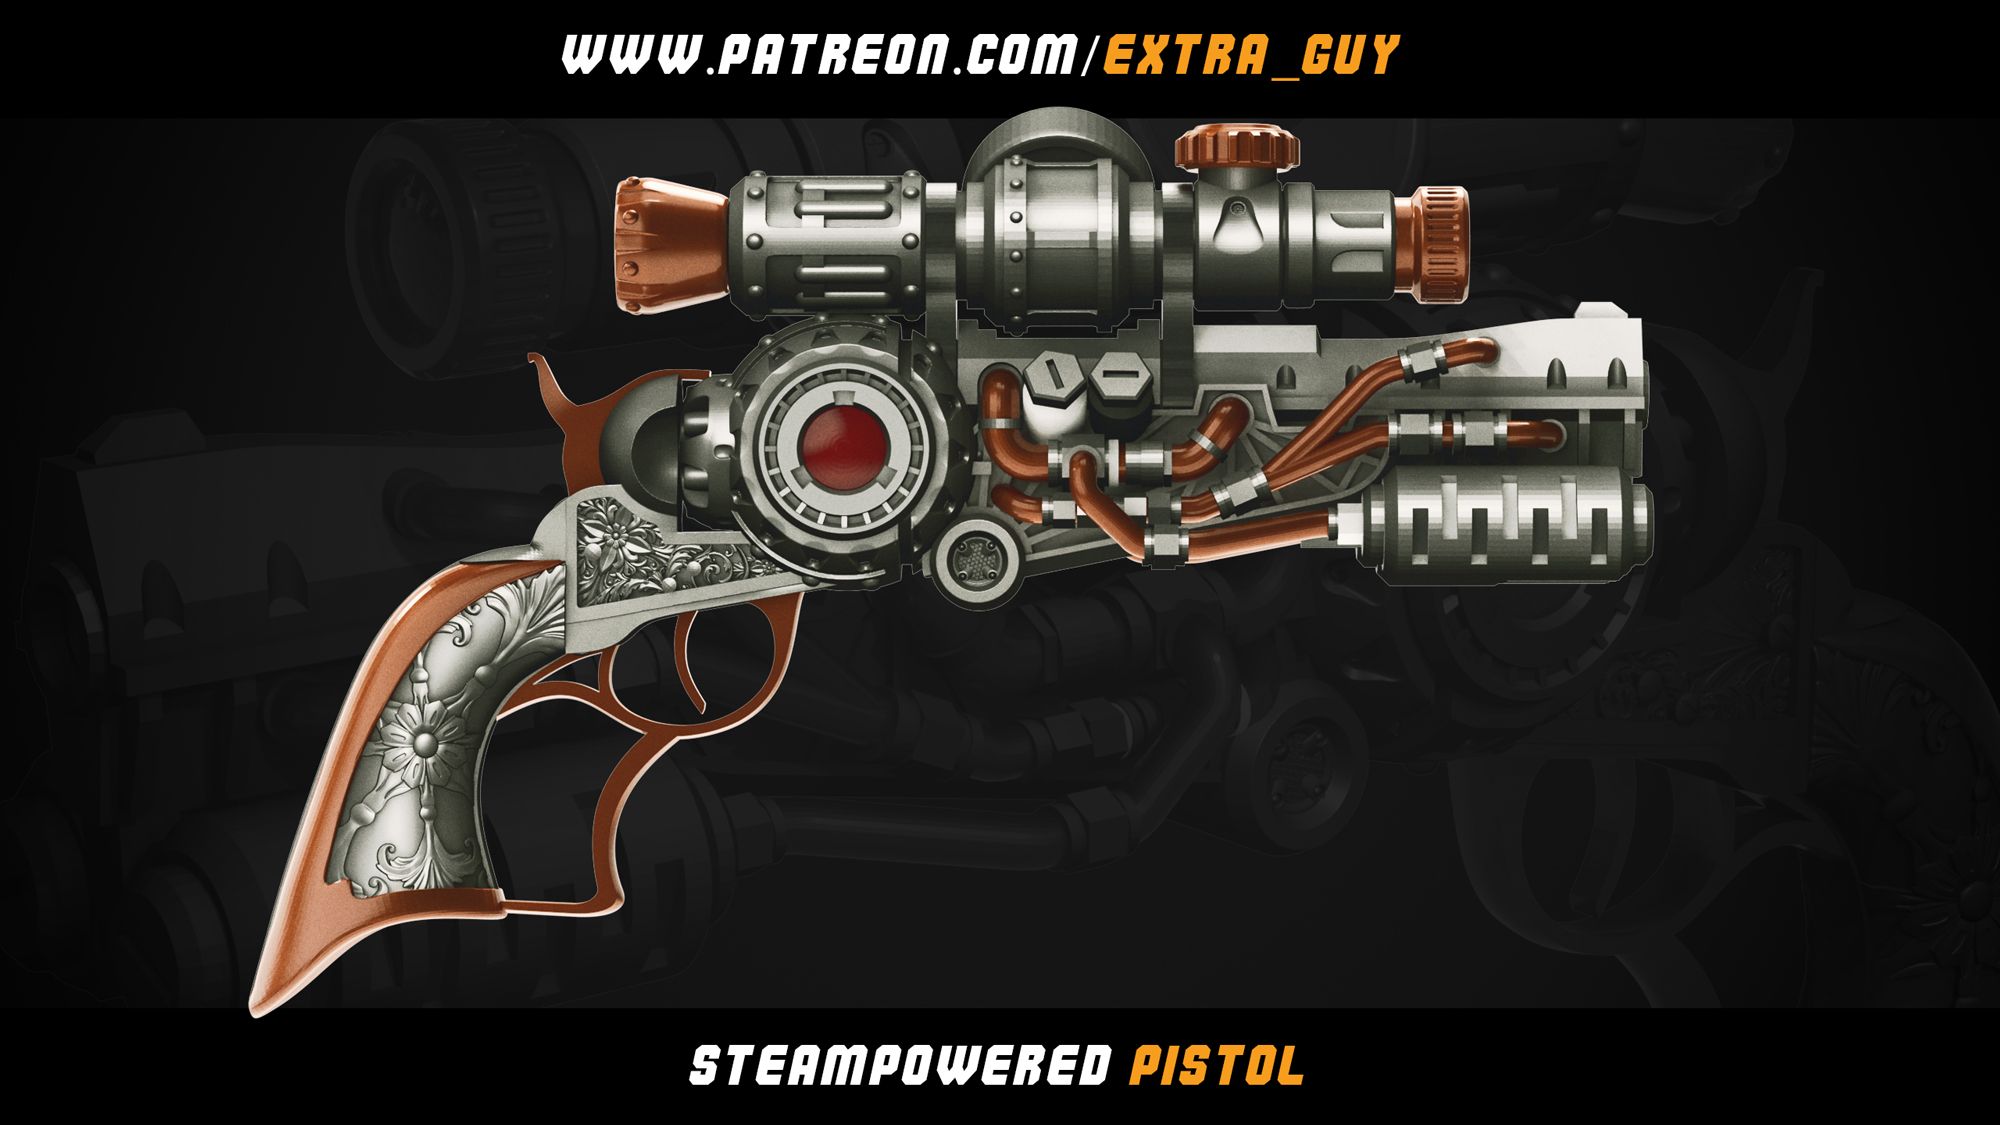 Steampowererd_pistol_03.jpg Файл 3D Пистолет в стиле стимпанк 3d печать 100 мм・Модель 3D-принтера для скачивания, dextraguy